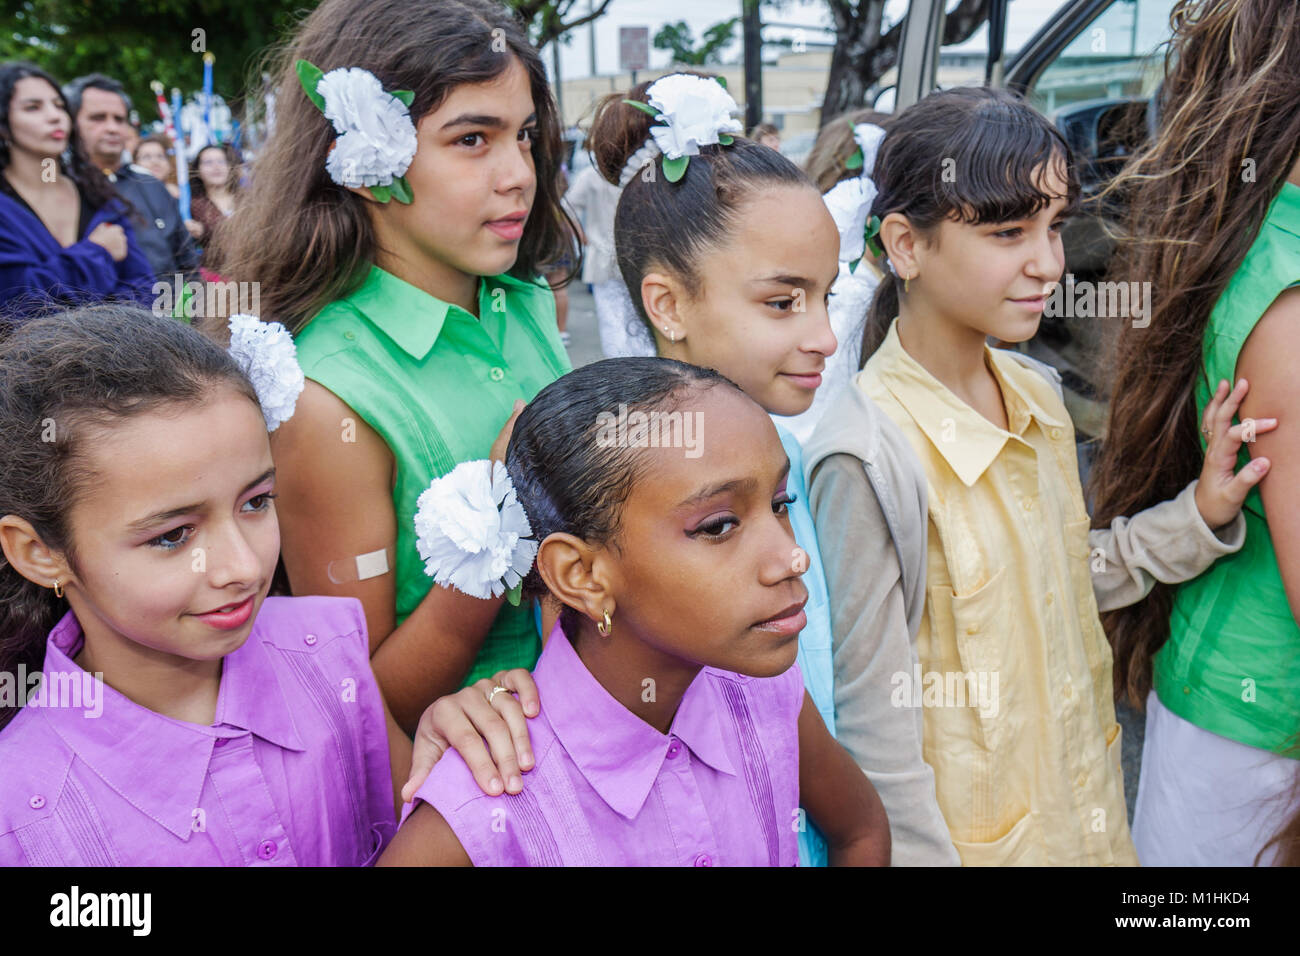 Florida, Hialeah, Jose Marti Parade, zu Ehren des kubanischen Dichters, Teilnehmers, Hispanic Latin Latino ethnischen Immigranten Minderheit, Mädchen, Besucher Reisen tra Stockfoto